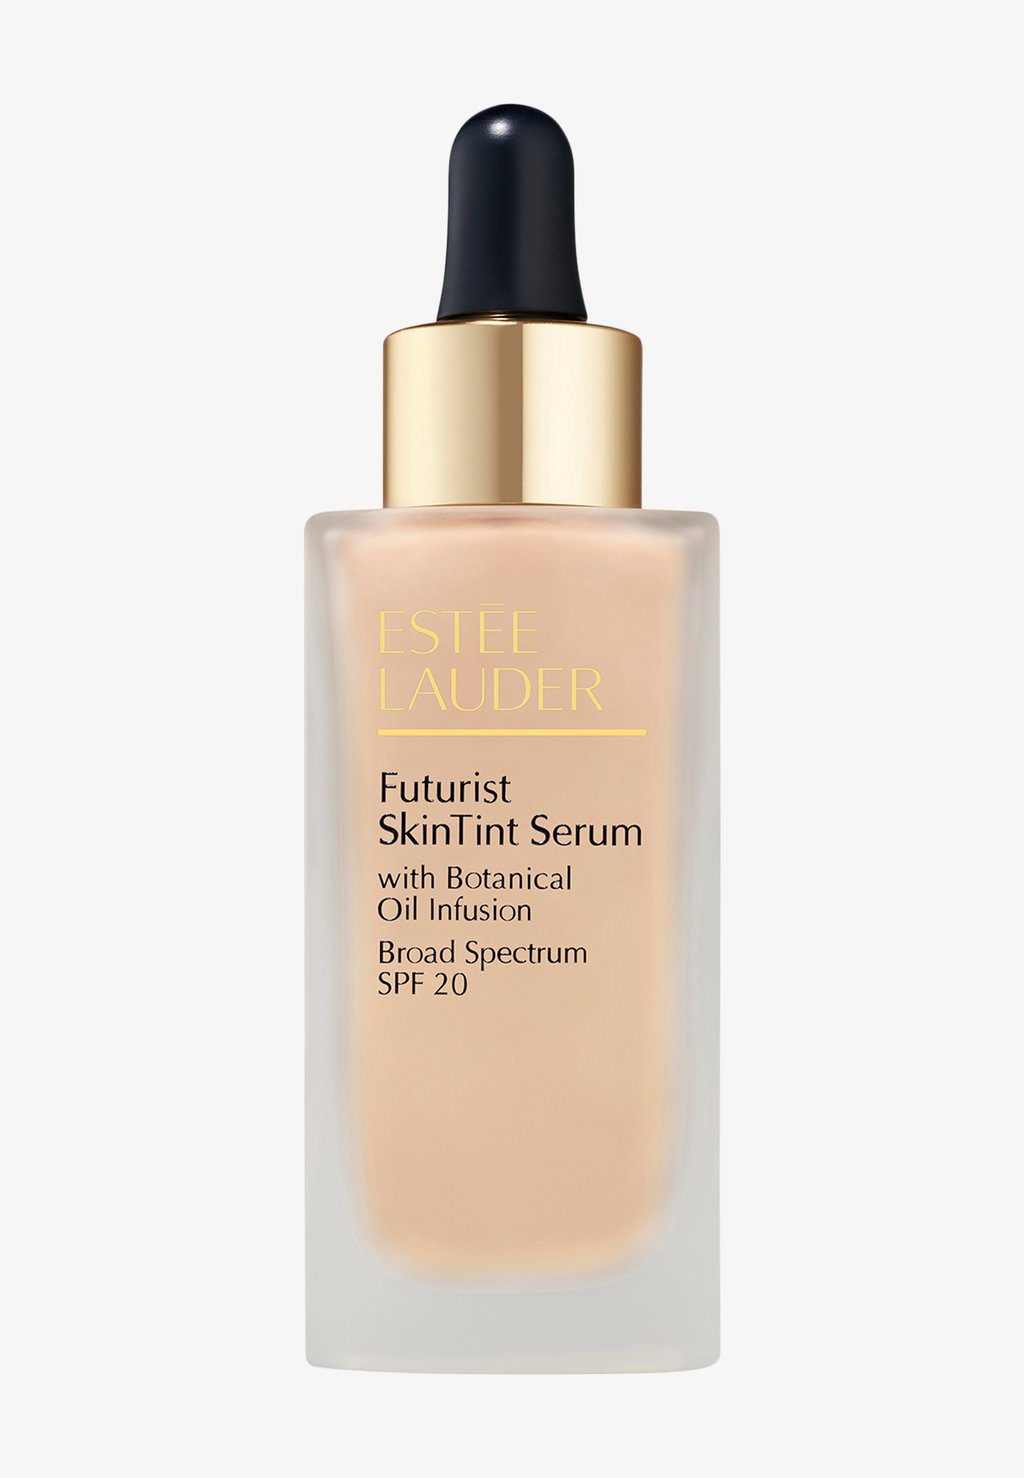 Тональный крем Futurist Skintint Serum Foundation ESTÉE LAUDER, цвет 0n1 alabaster